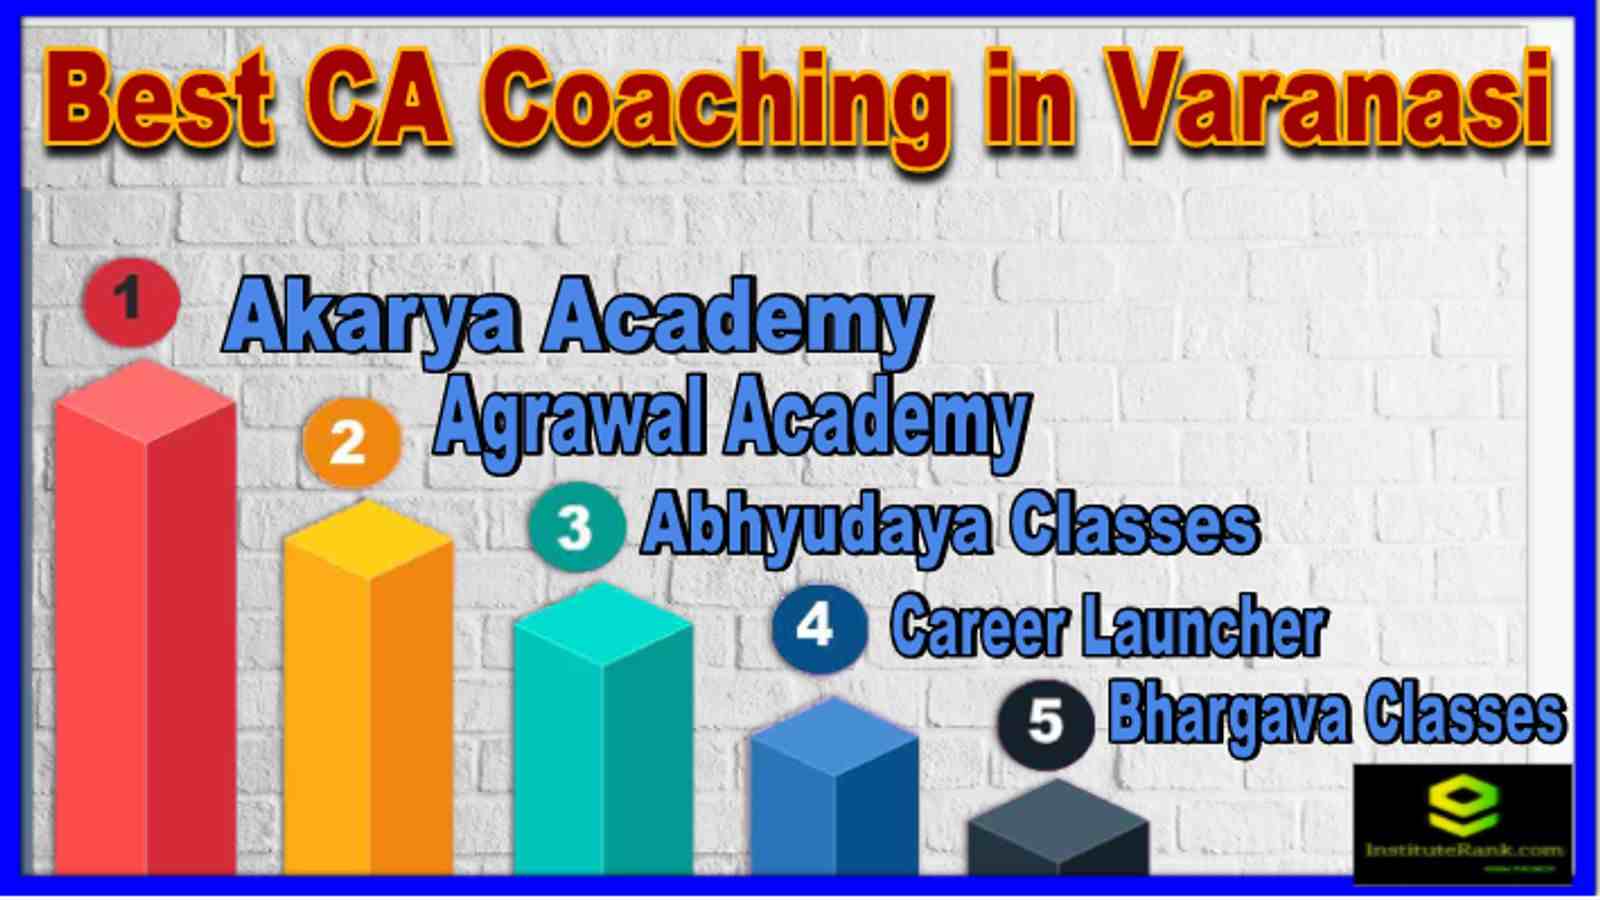 Best CA Coaching in Varanasi